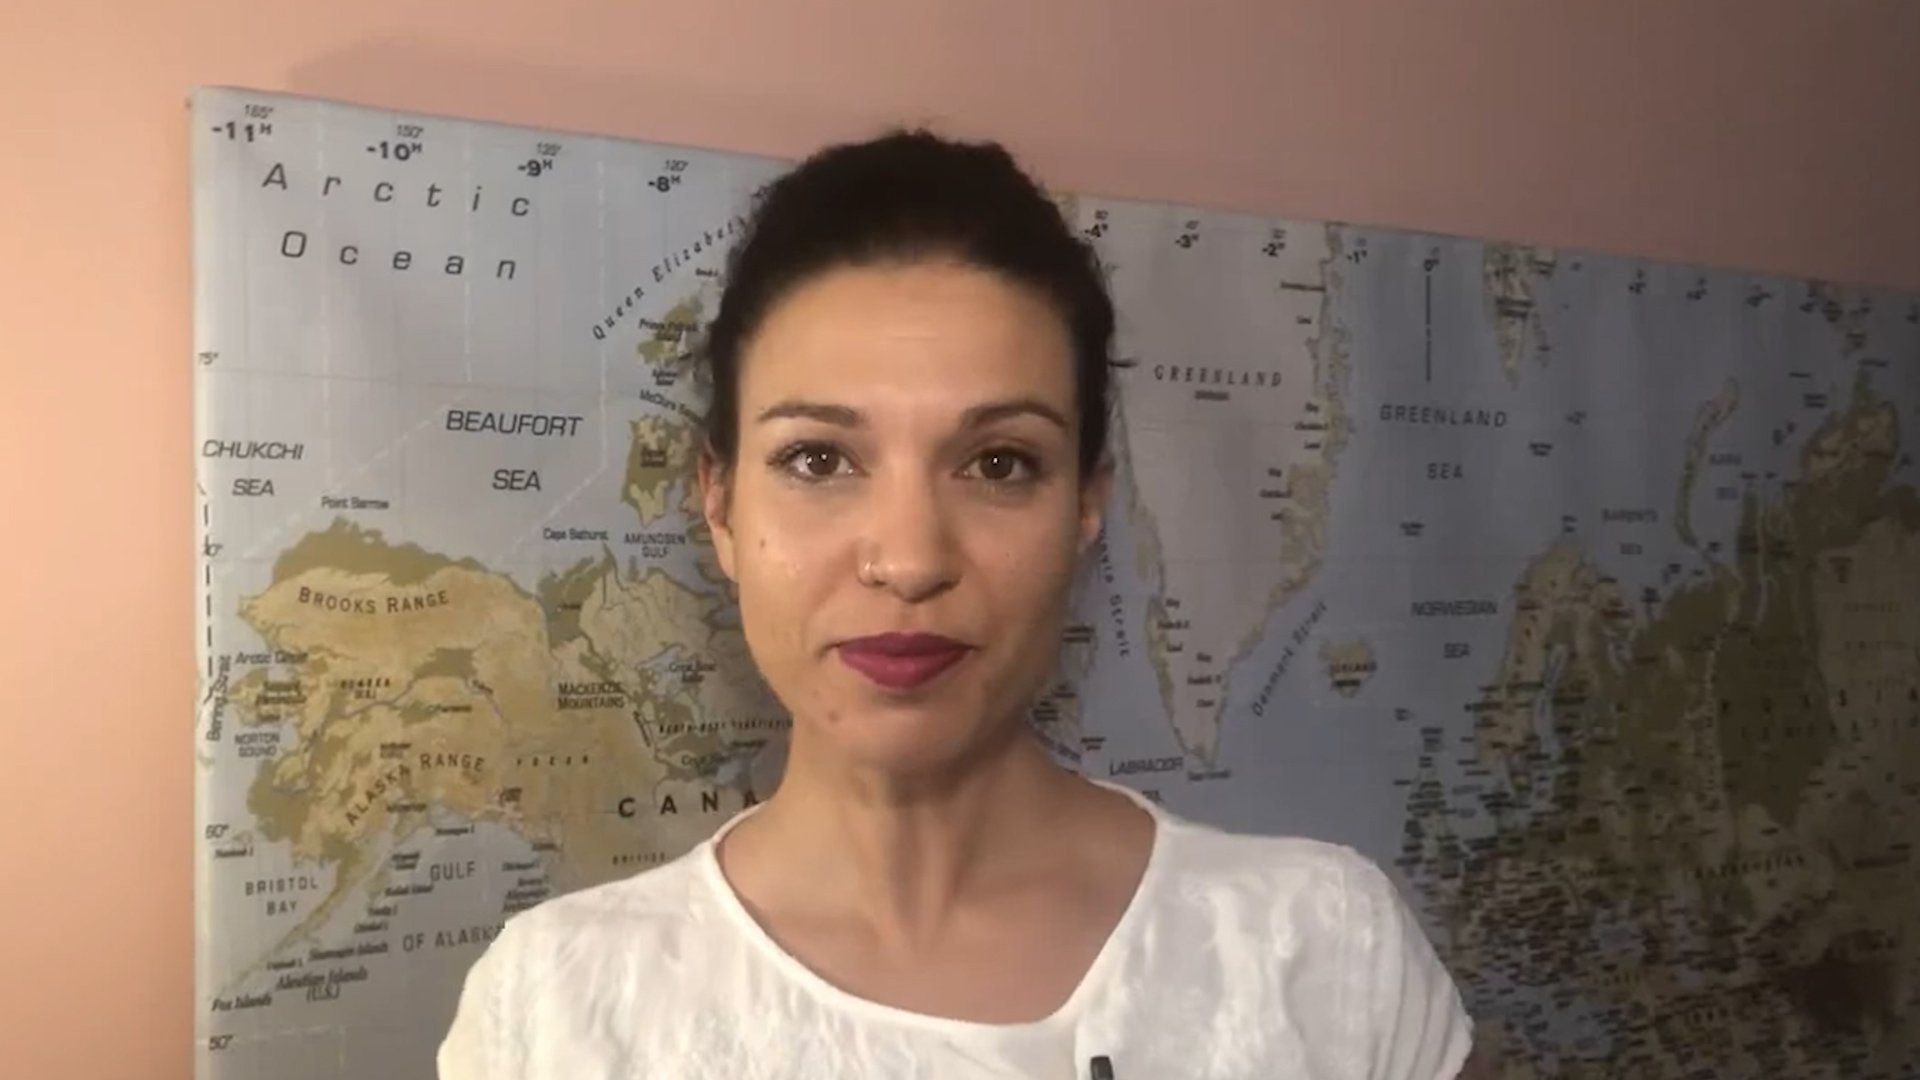 VÍDEO | Bea Talegón: "On la JEC no arriba: Clara Ponsatí ja és eurodiputada"